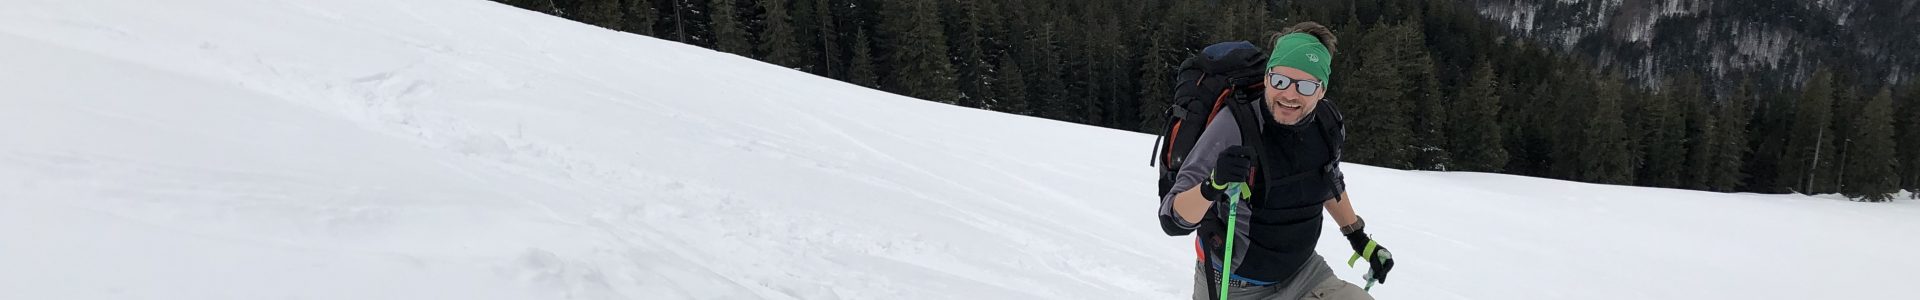 Skitourenworkshop für Einsteiger